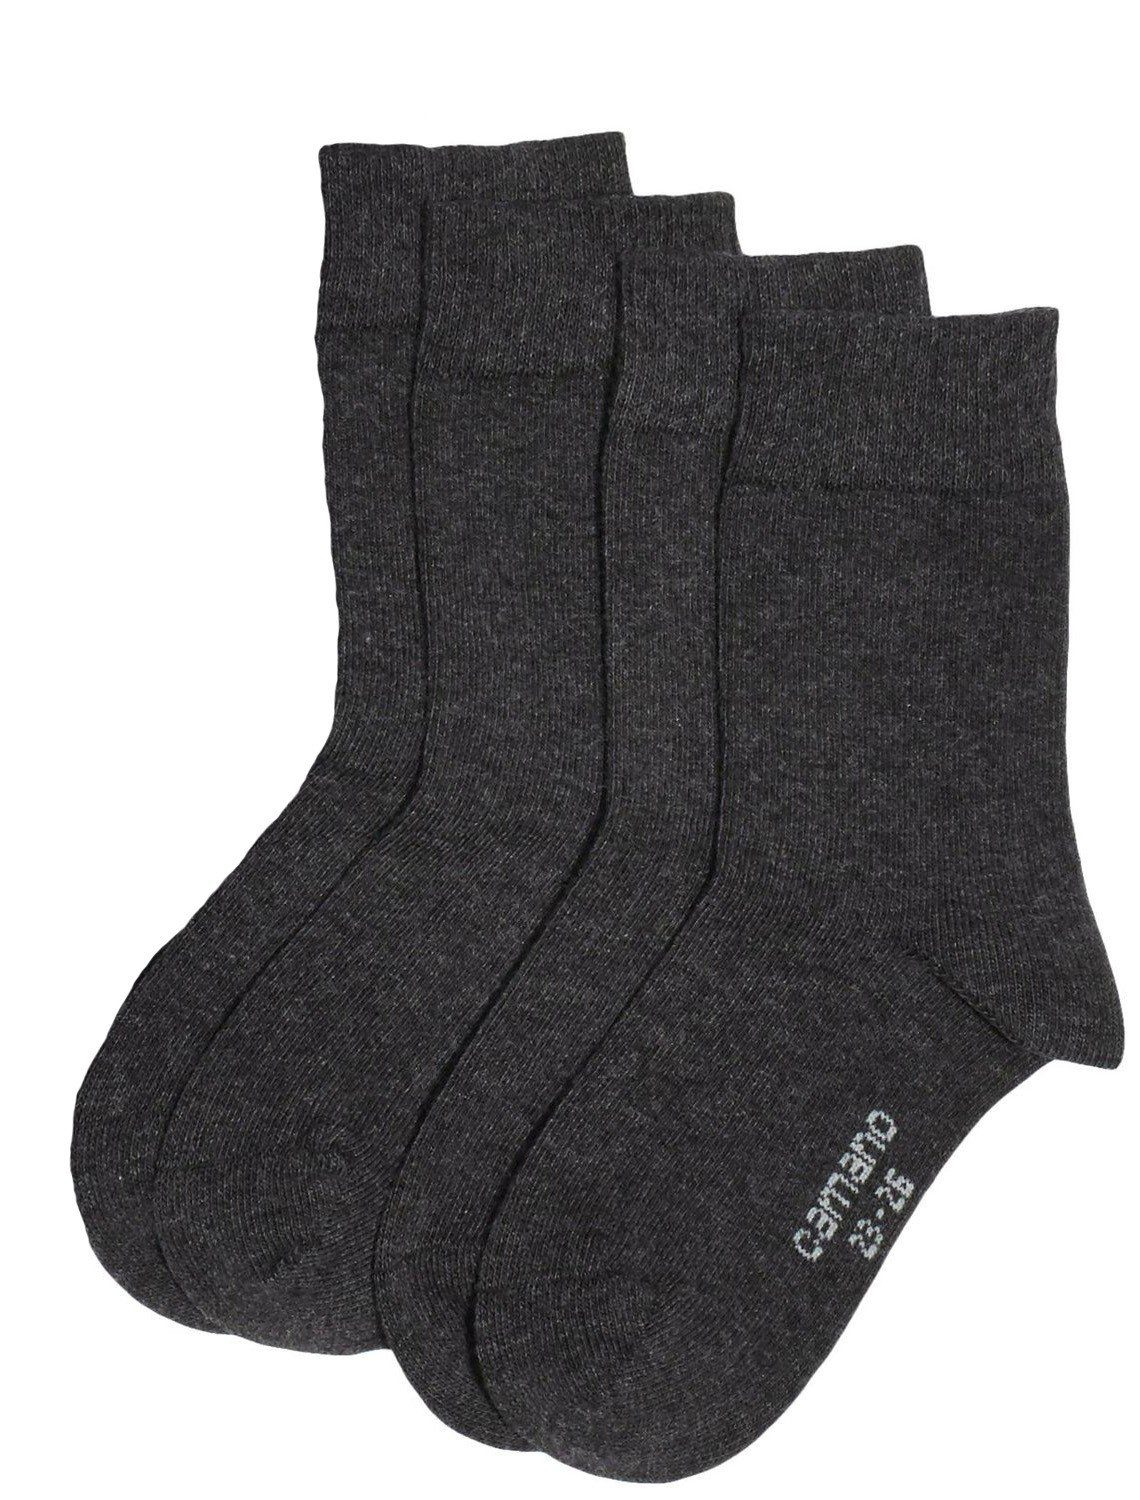 Camano Langsocken CA3702 (Packung, 4-Paar, 4 Paar) Mädchen oder Jungen Socken Strümpfe, 2x2er Pack, Socken, Baumwolle